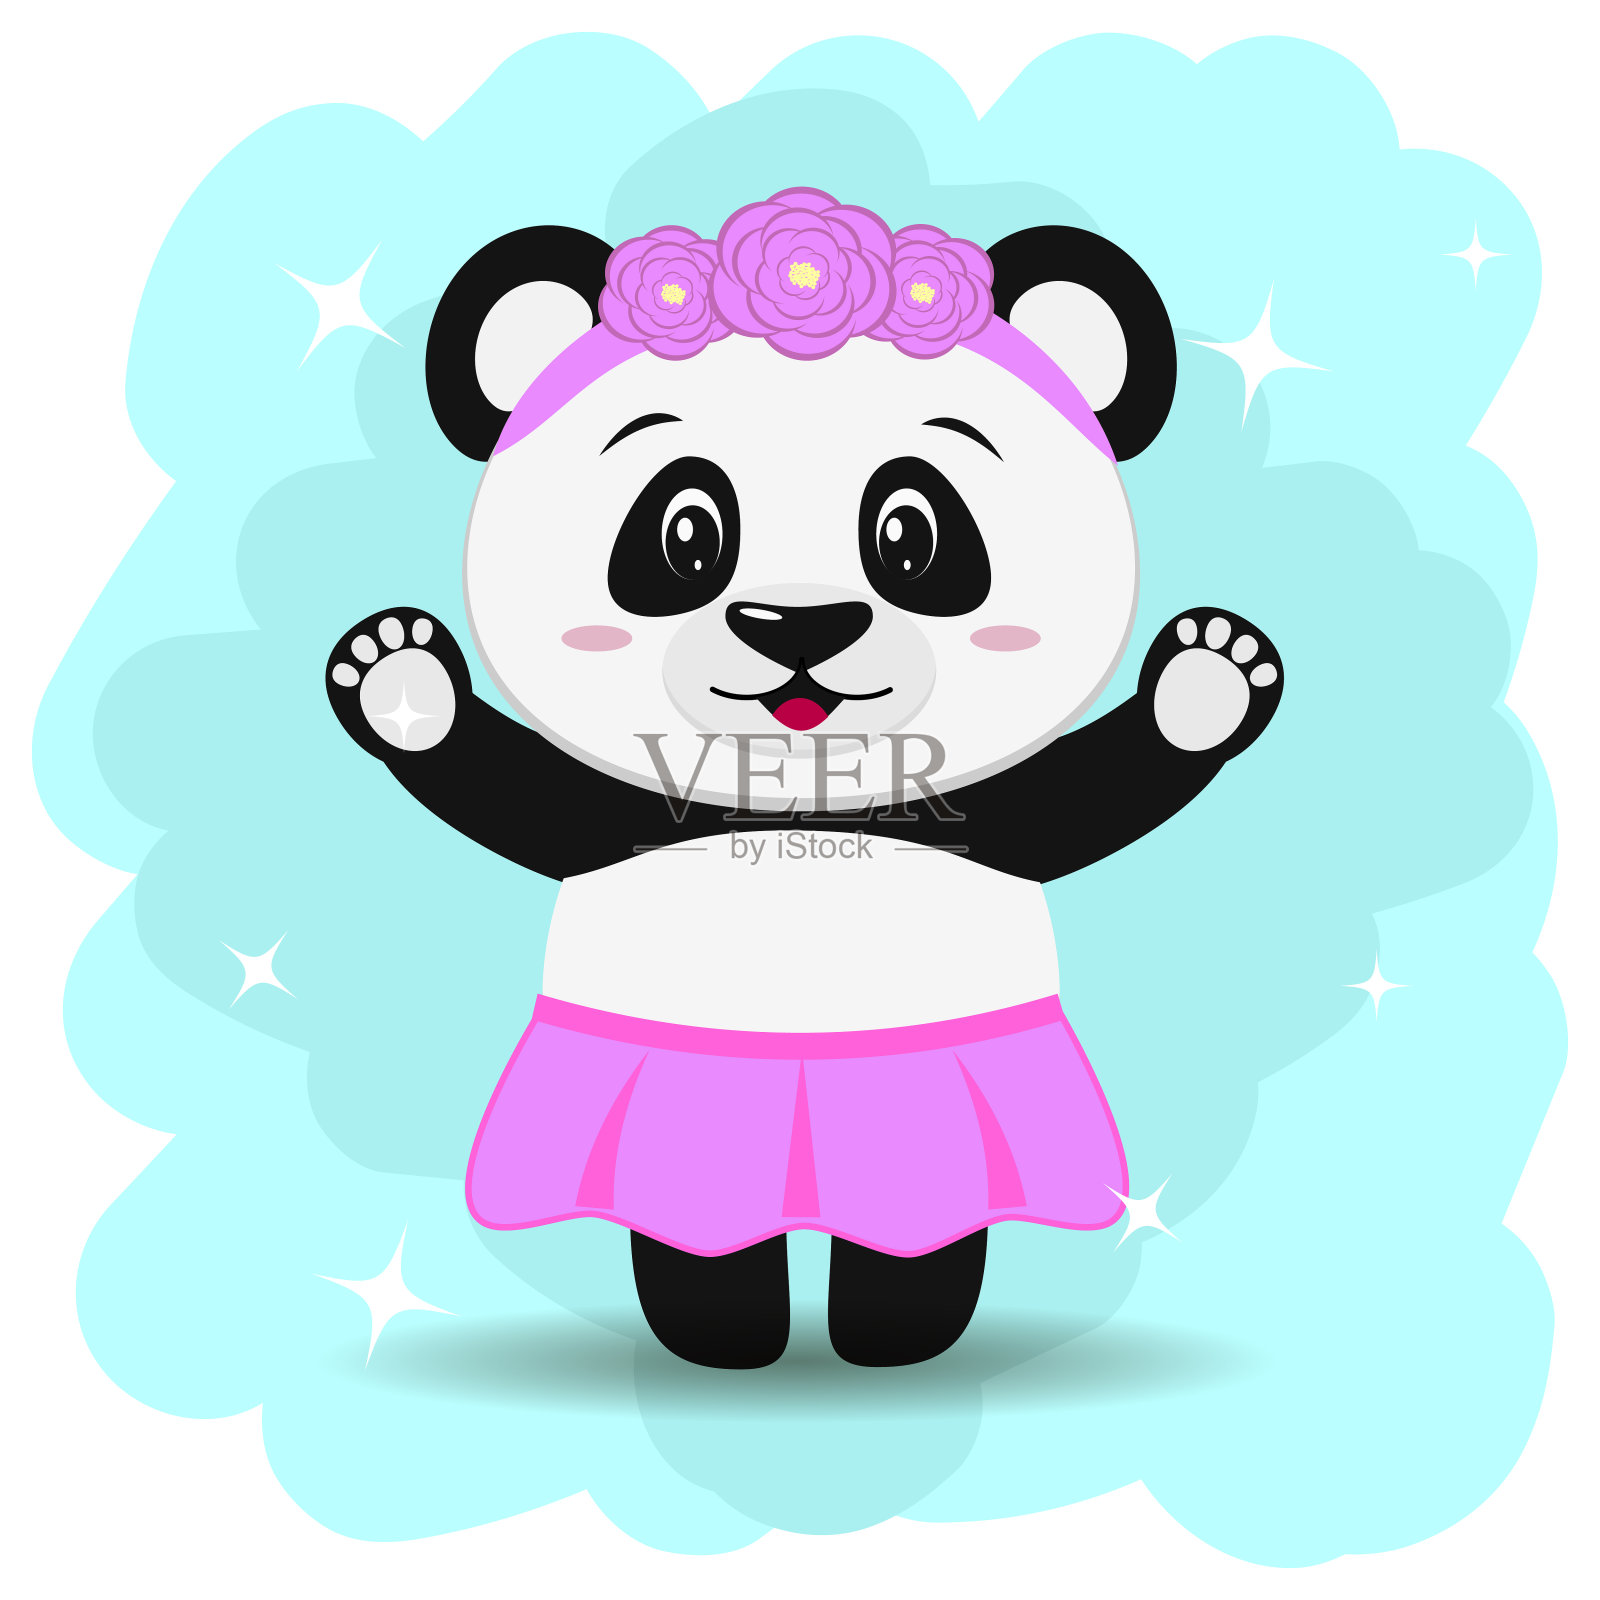 一只可爱的熊猫穿着裙子，带着卡通风格的花环，双臂高举。插画图片素材